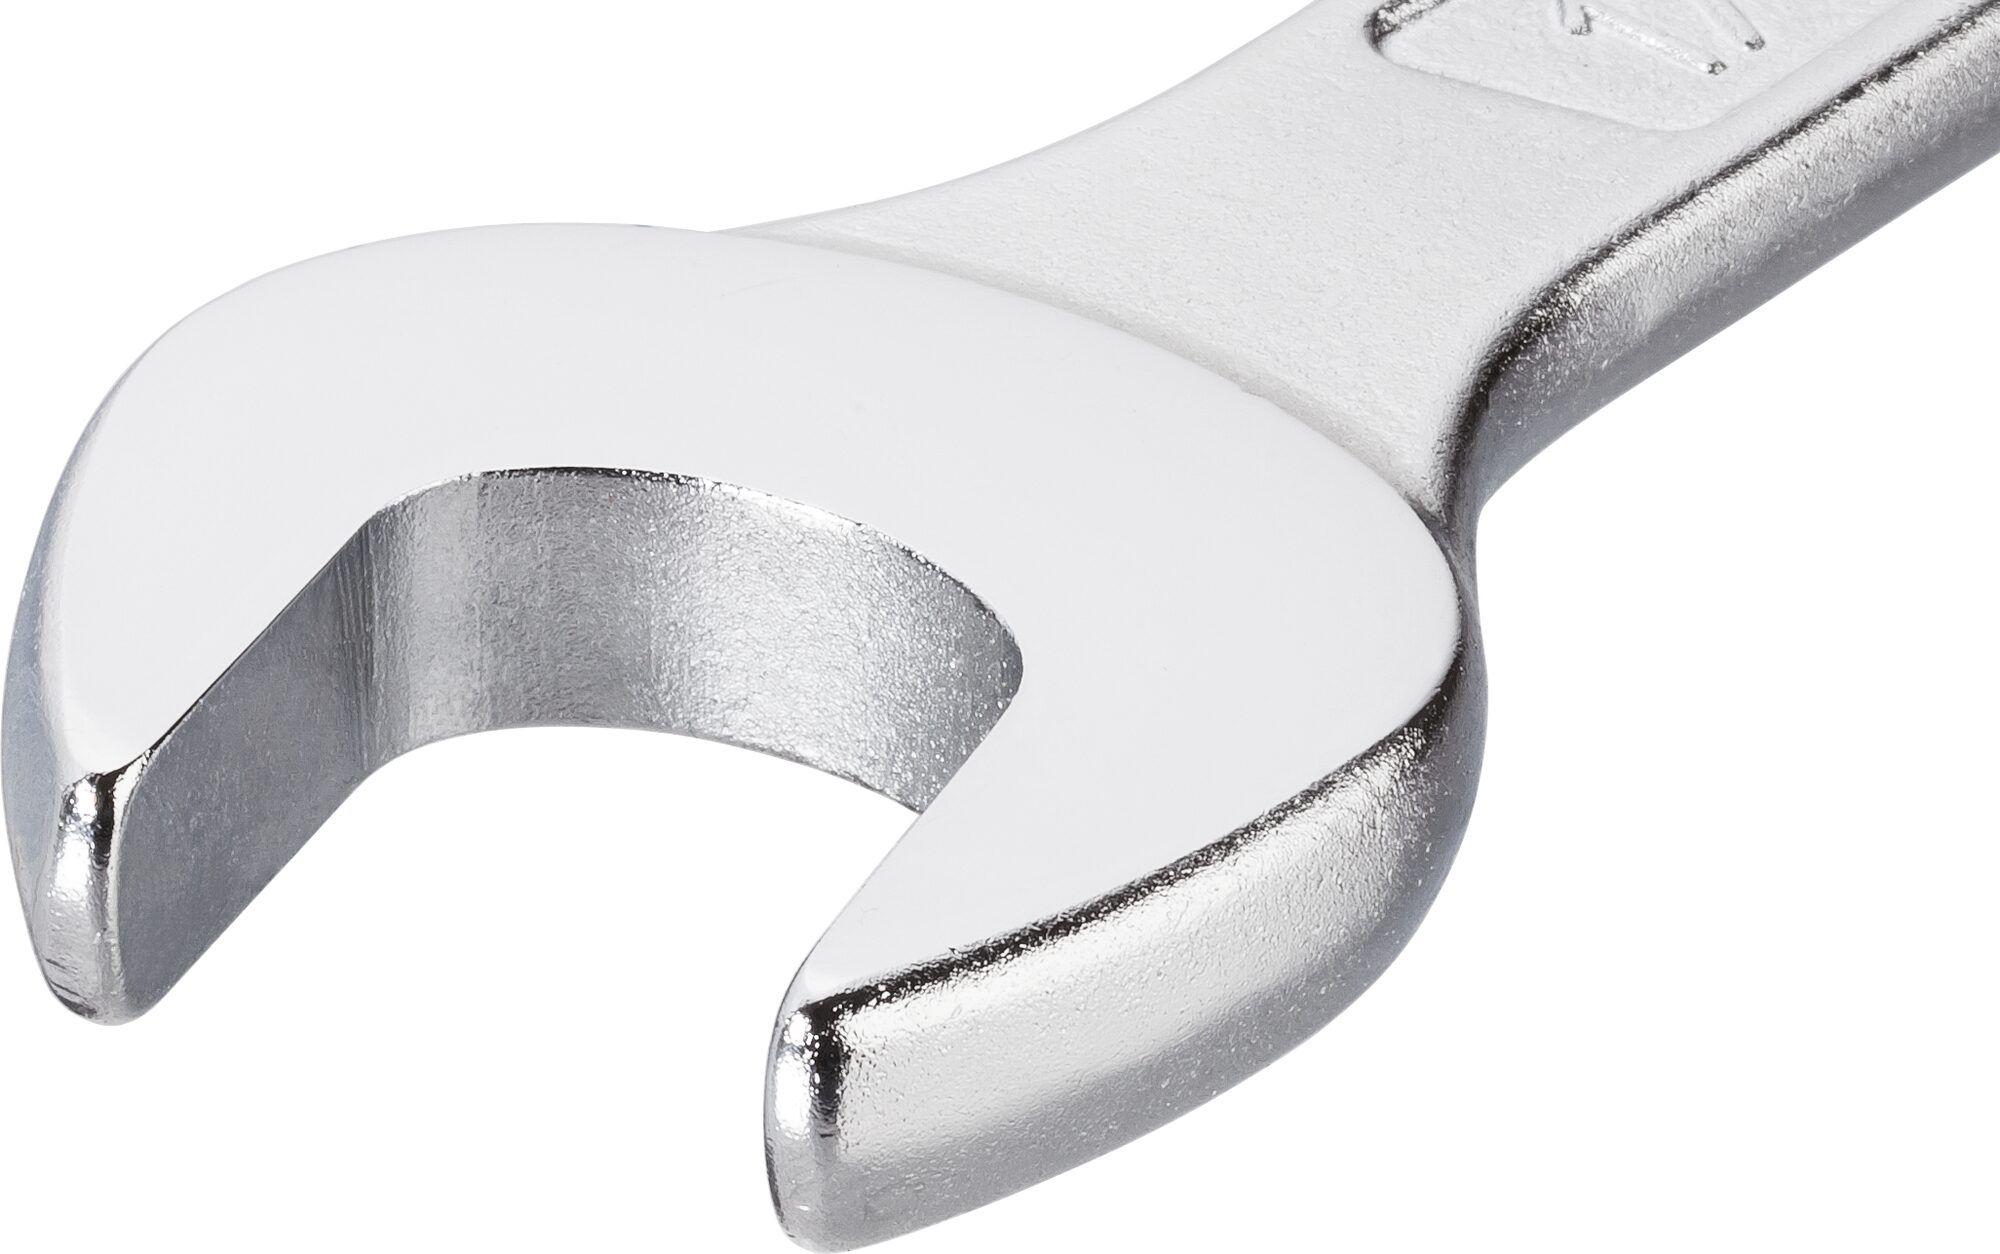 HAZET Ring-Maulschlüssel 600N-32 · Außen Doppel-Sechskant-Tractionsprofil · 32 mm